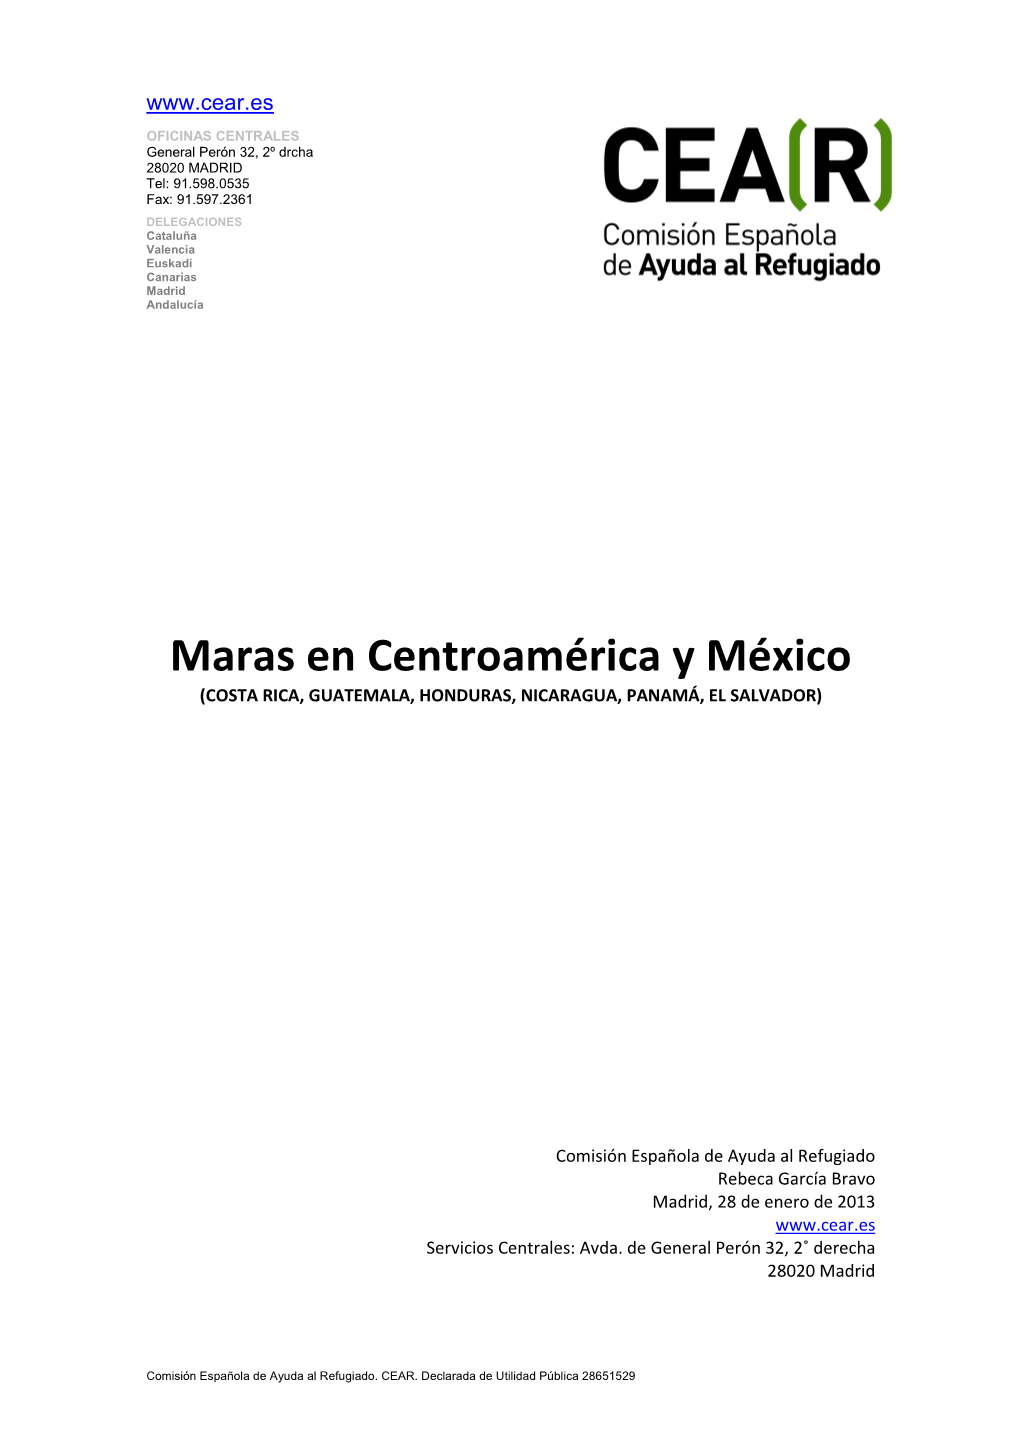 MARAS EN CENTROAMÉRICA. Informe 2012